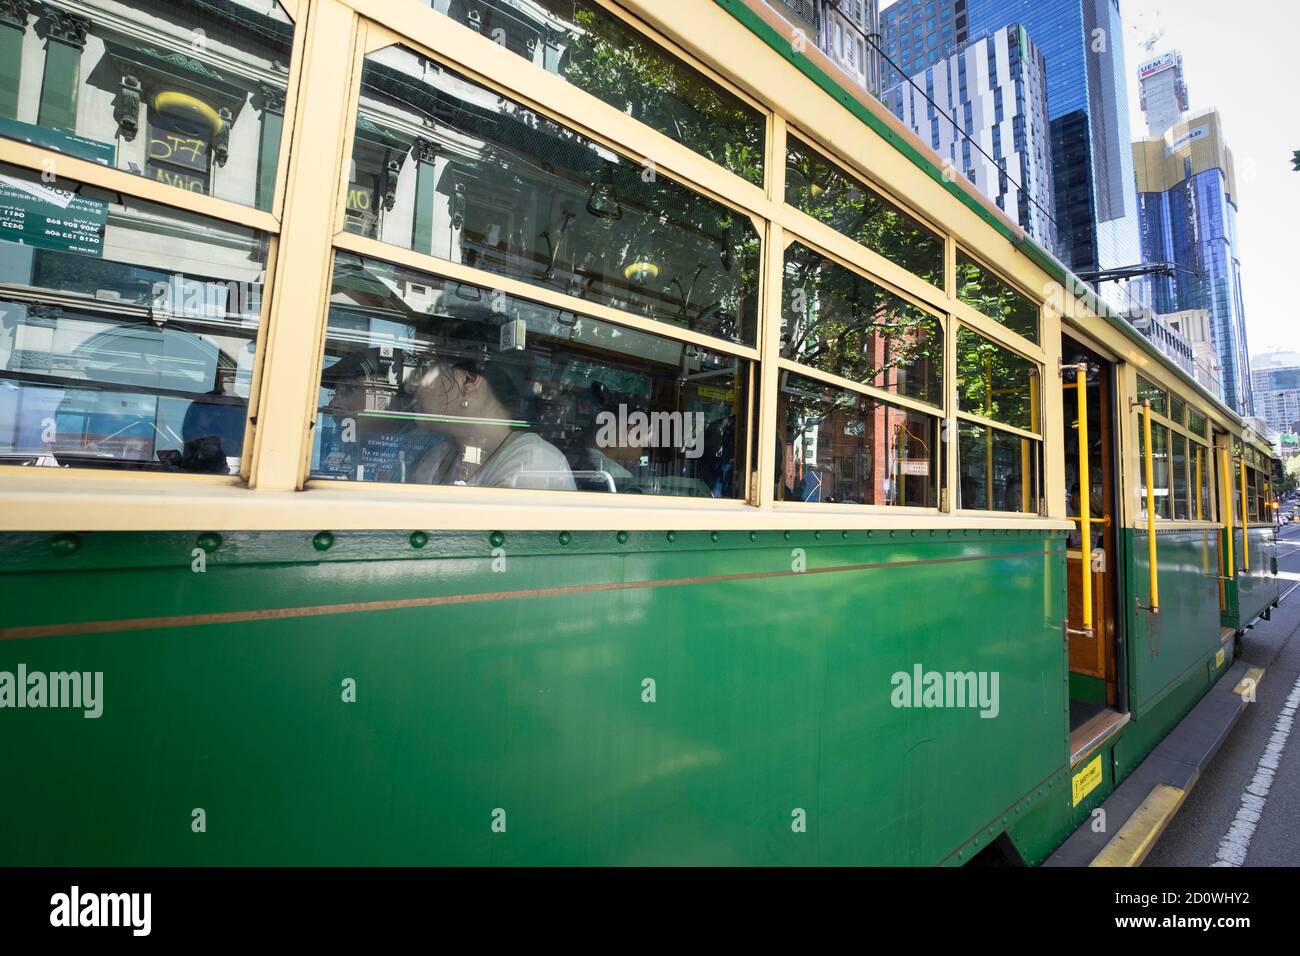 Tramway vert vintage de classe W dans le service de tramway City Circle. Tramway gratuit destiné principalement aux touristes qui se rendent dans le quartier central des affaires de Melbourne Banque D'Images